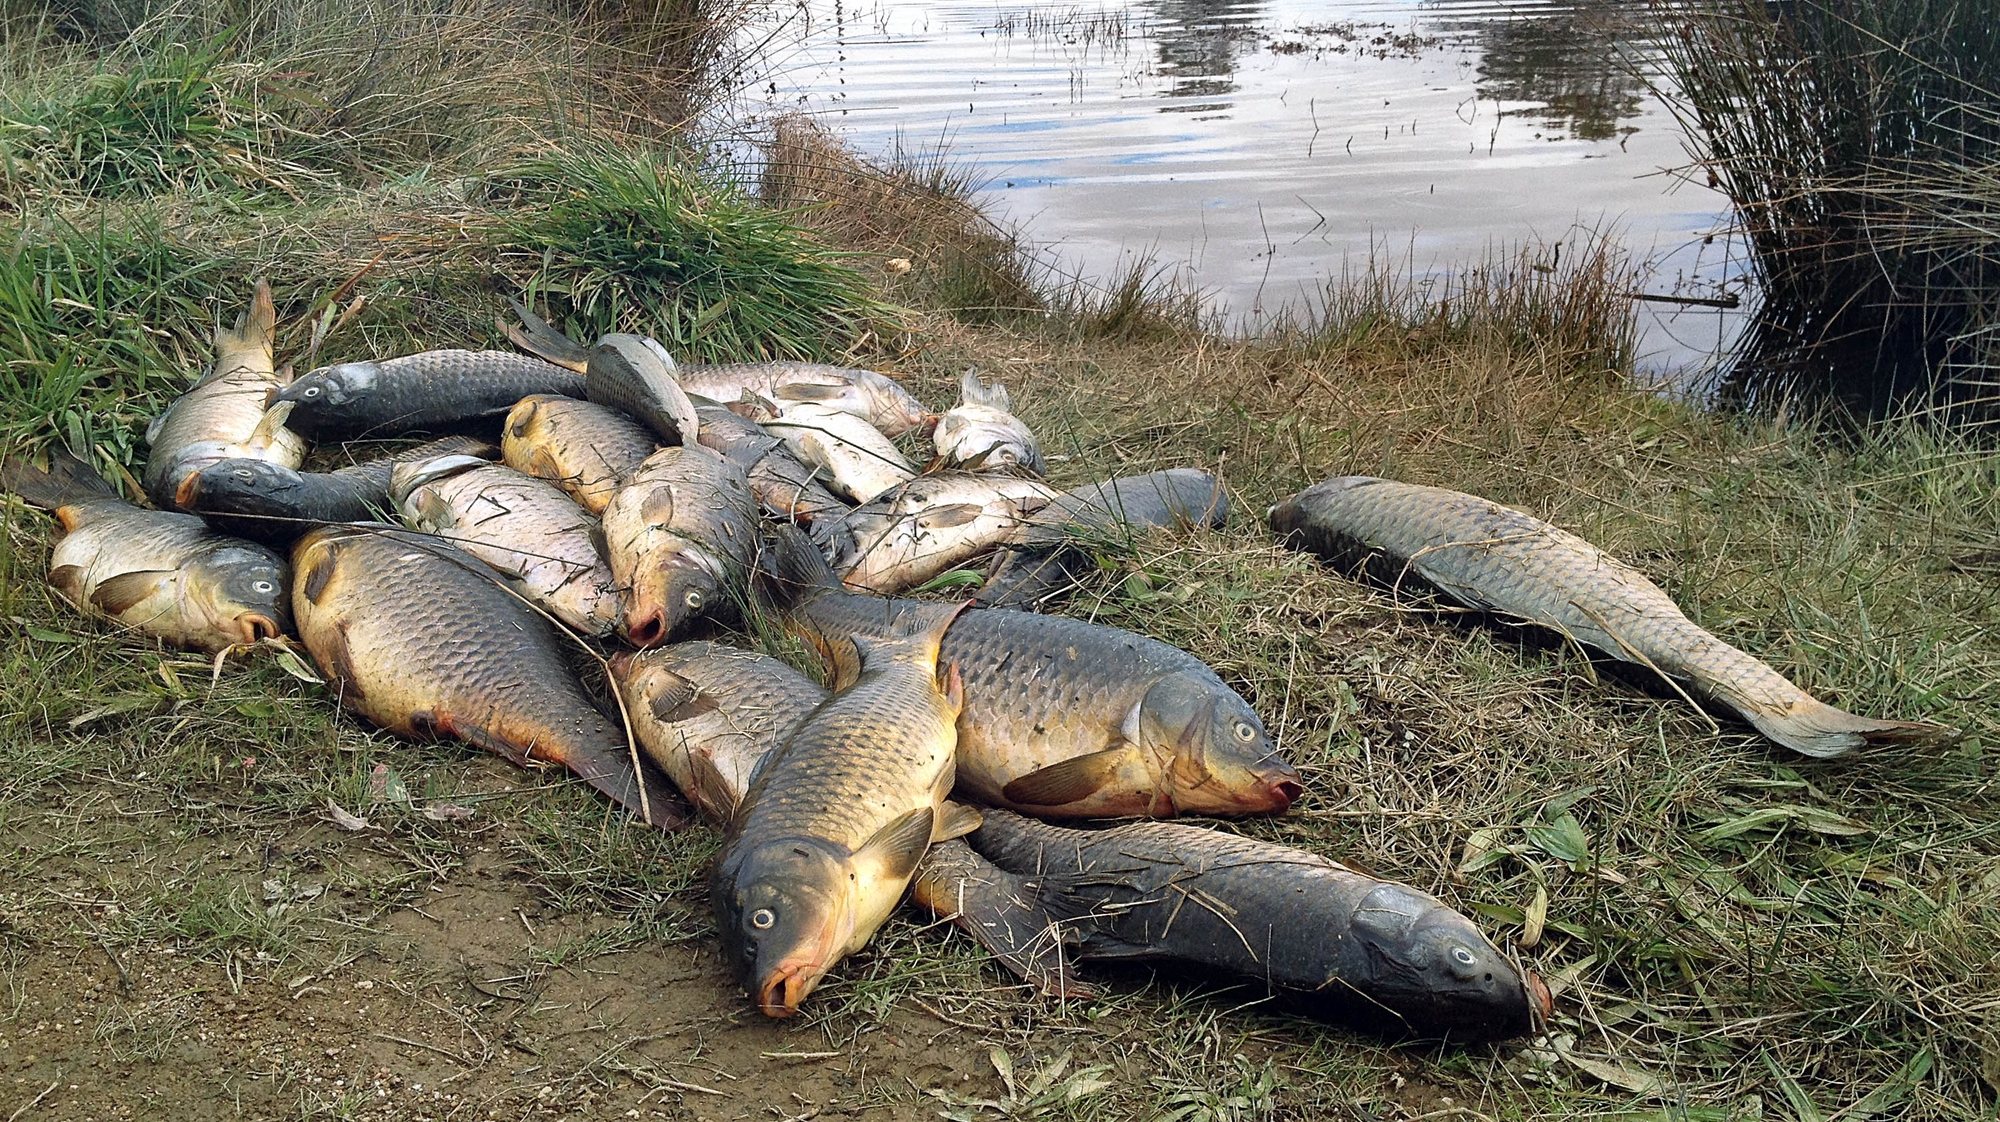 Centenas de peixes apareceram mortos na barragem da Taleigueira, junto à saída sul da cidade de Castelo Branco, 16 de fevereiro de 2015. As autoridades estão a apurar a causa da morte dos peixes naquela albufeira que se encontra nas proximidades da zona industrial de Castelo Branco. ANTÓNIO JOSÉ/LUSA